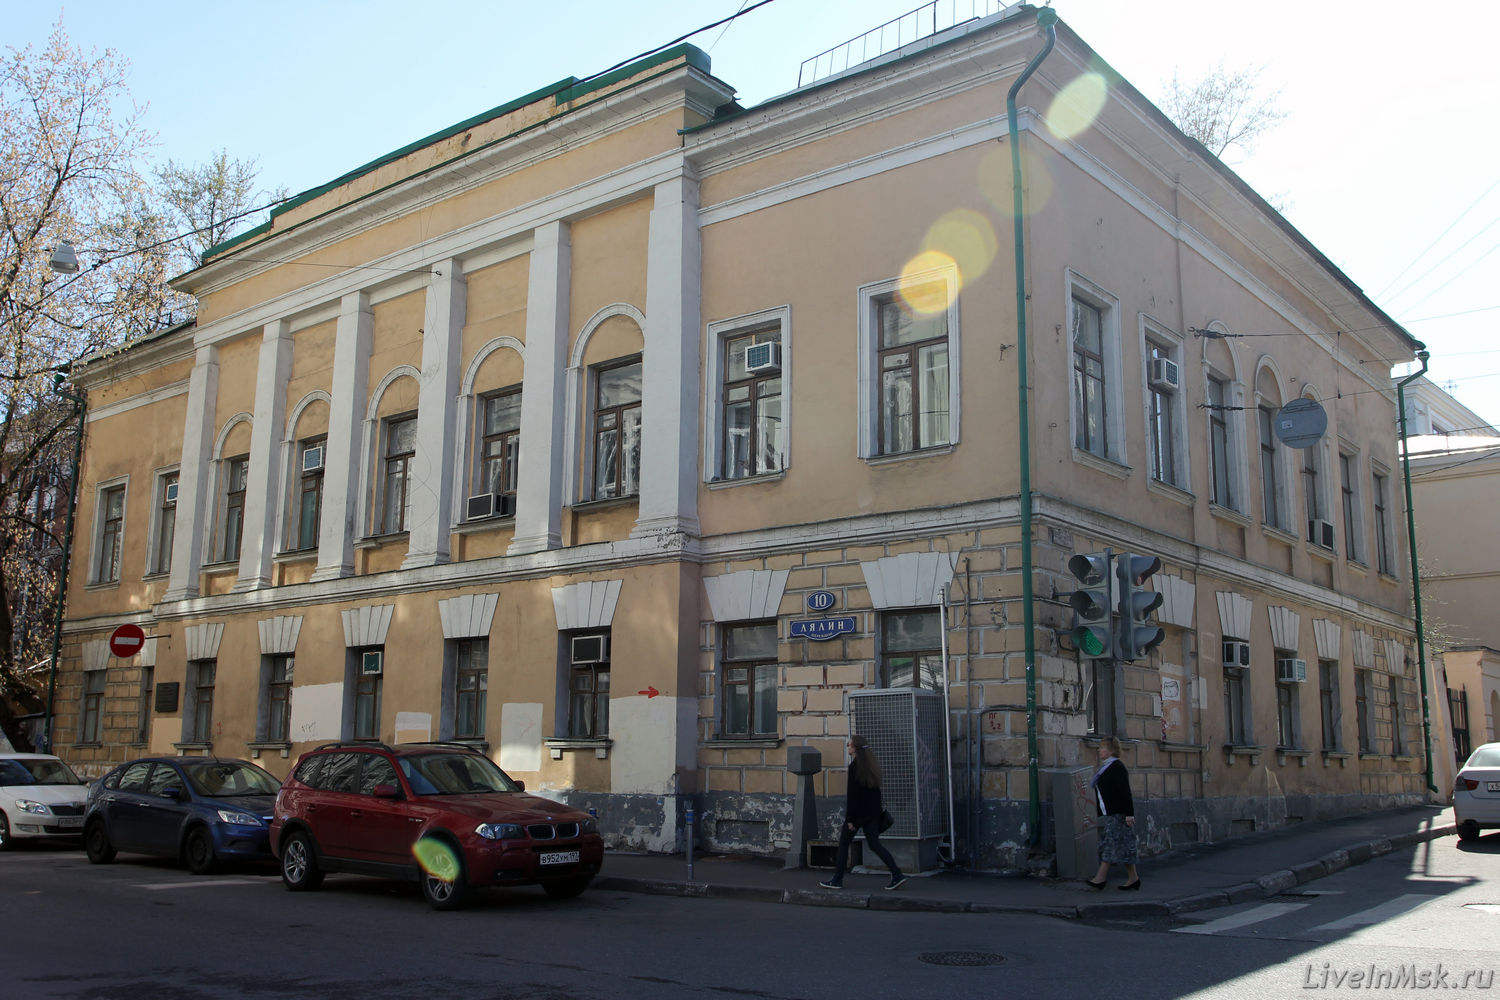 Дом купца С.Г. Попова, фото 2012 года